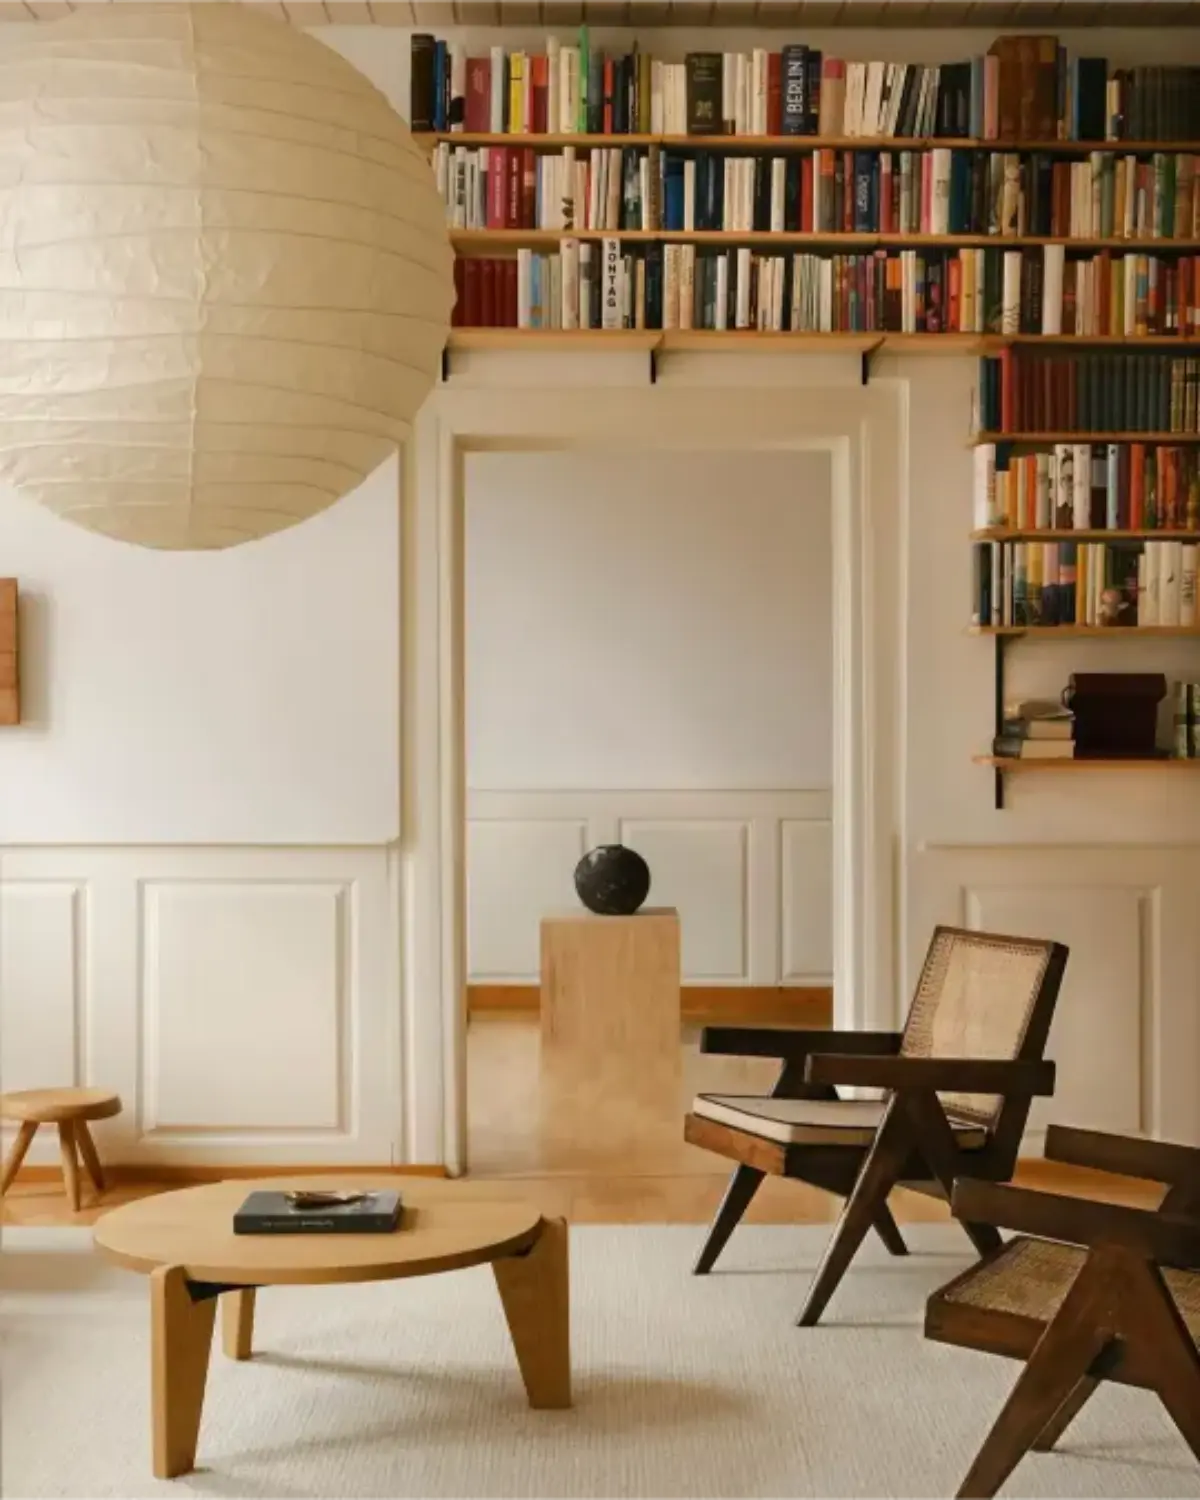 idée dedeco design interieur minimaliste et des meubles courbes arrondis